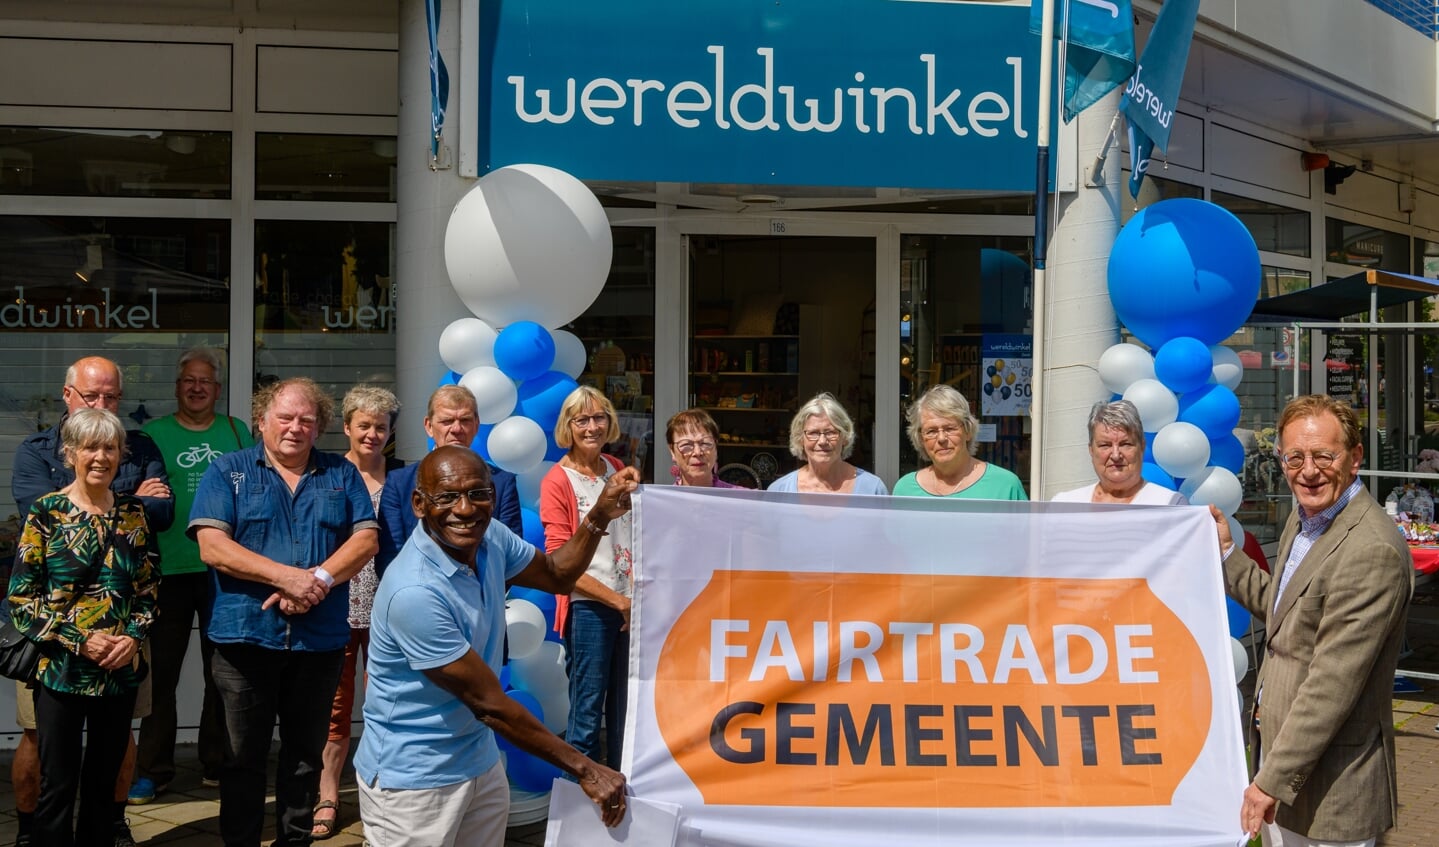 De wereld winkel in Zeist bestaat 50 jaar. Burgemeester Janssen en Cor Doelwijt van de Fair Trade Werkgroep tonen de Fair Trade vlag voor de Wereldwinkel (2021).